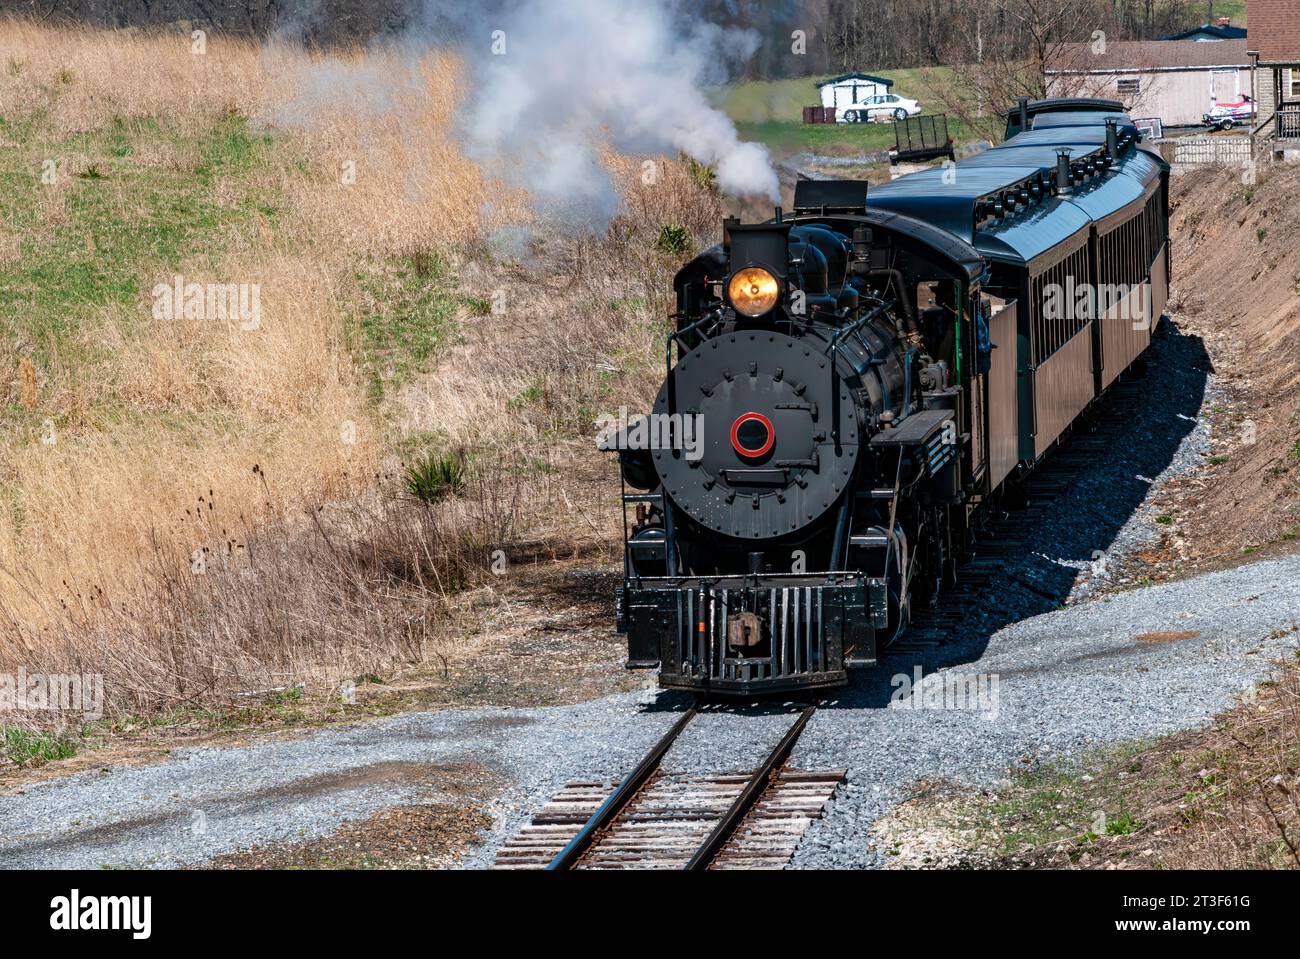 Vue avant et légèrement au-dessus d'un train de vapeur de passager à voie étroite à l'approche restauré, fumée et vapeur soufflantes lors d'une Sunny hiver Banque D'Images